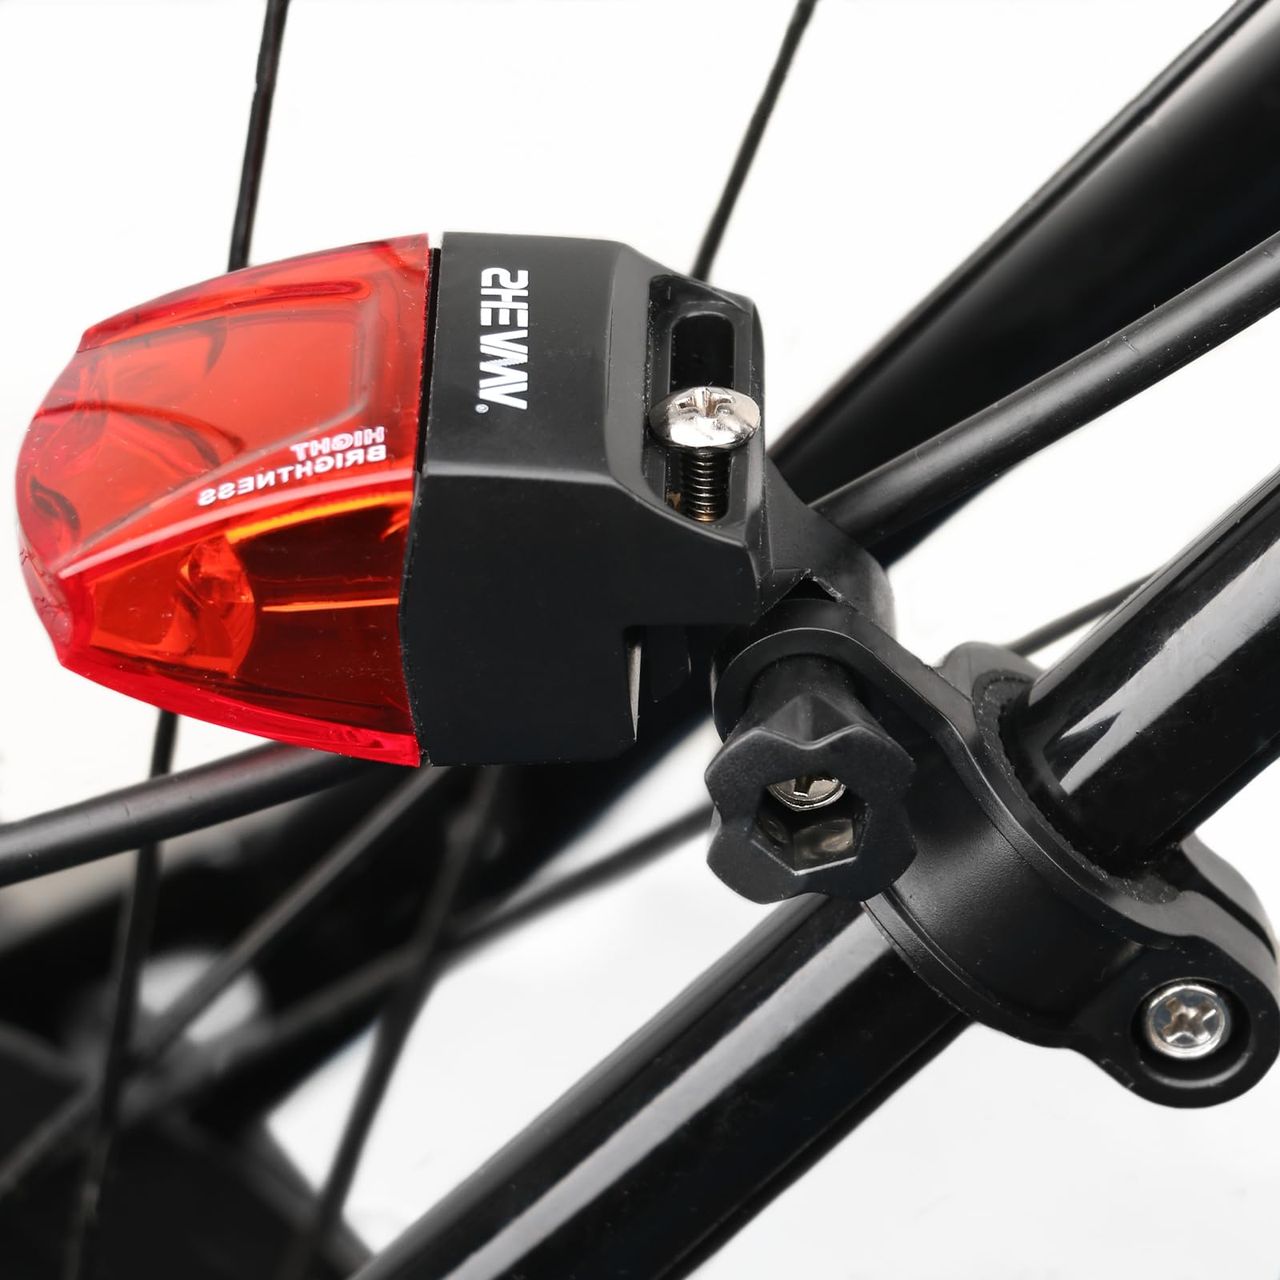 SHEAWA 自転車 テールライト 自動点灯 磁気発電 点滅 セーフティライト リアライト バッテリー不要 高い視認性 軽量 便利 (右側)